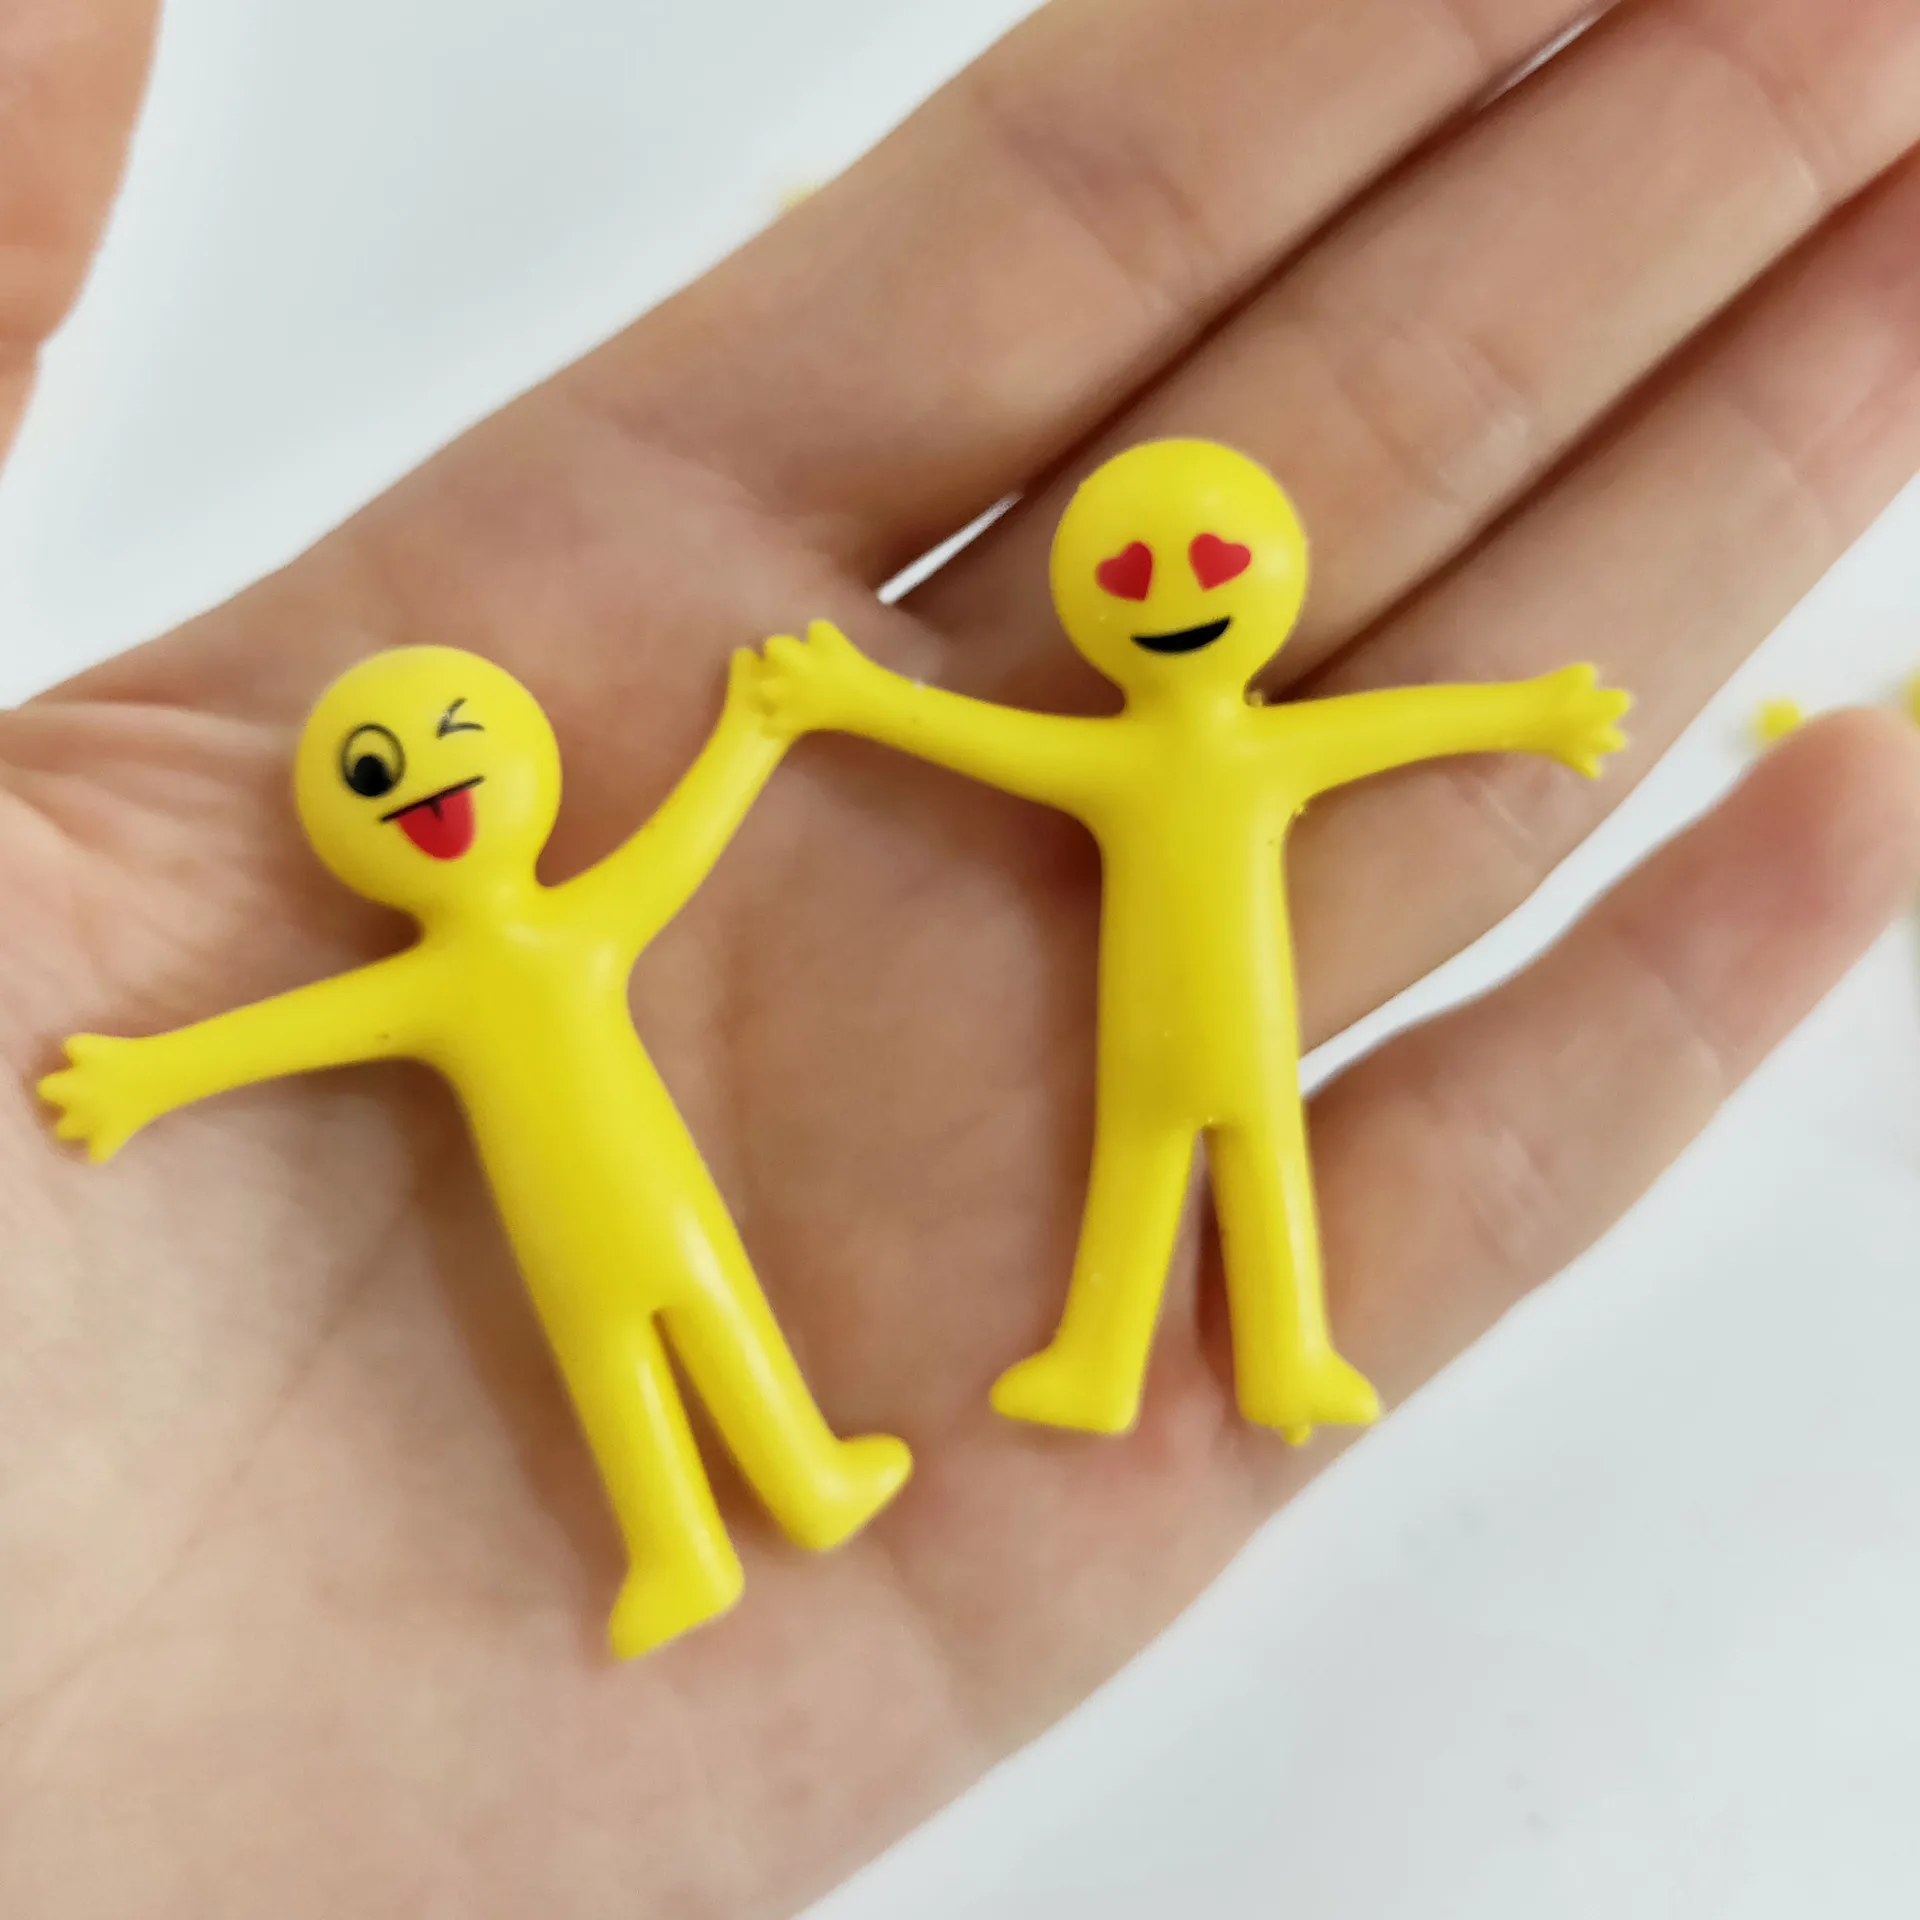 Новинка TPR мягкий клей с выражением желтого человечка может тянуть маленькую игрушку куклы Упакованные твист яйцо игрушки Забавные игрушки-гаджеты Squishy